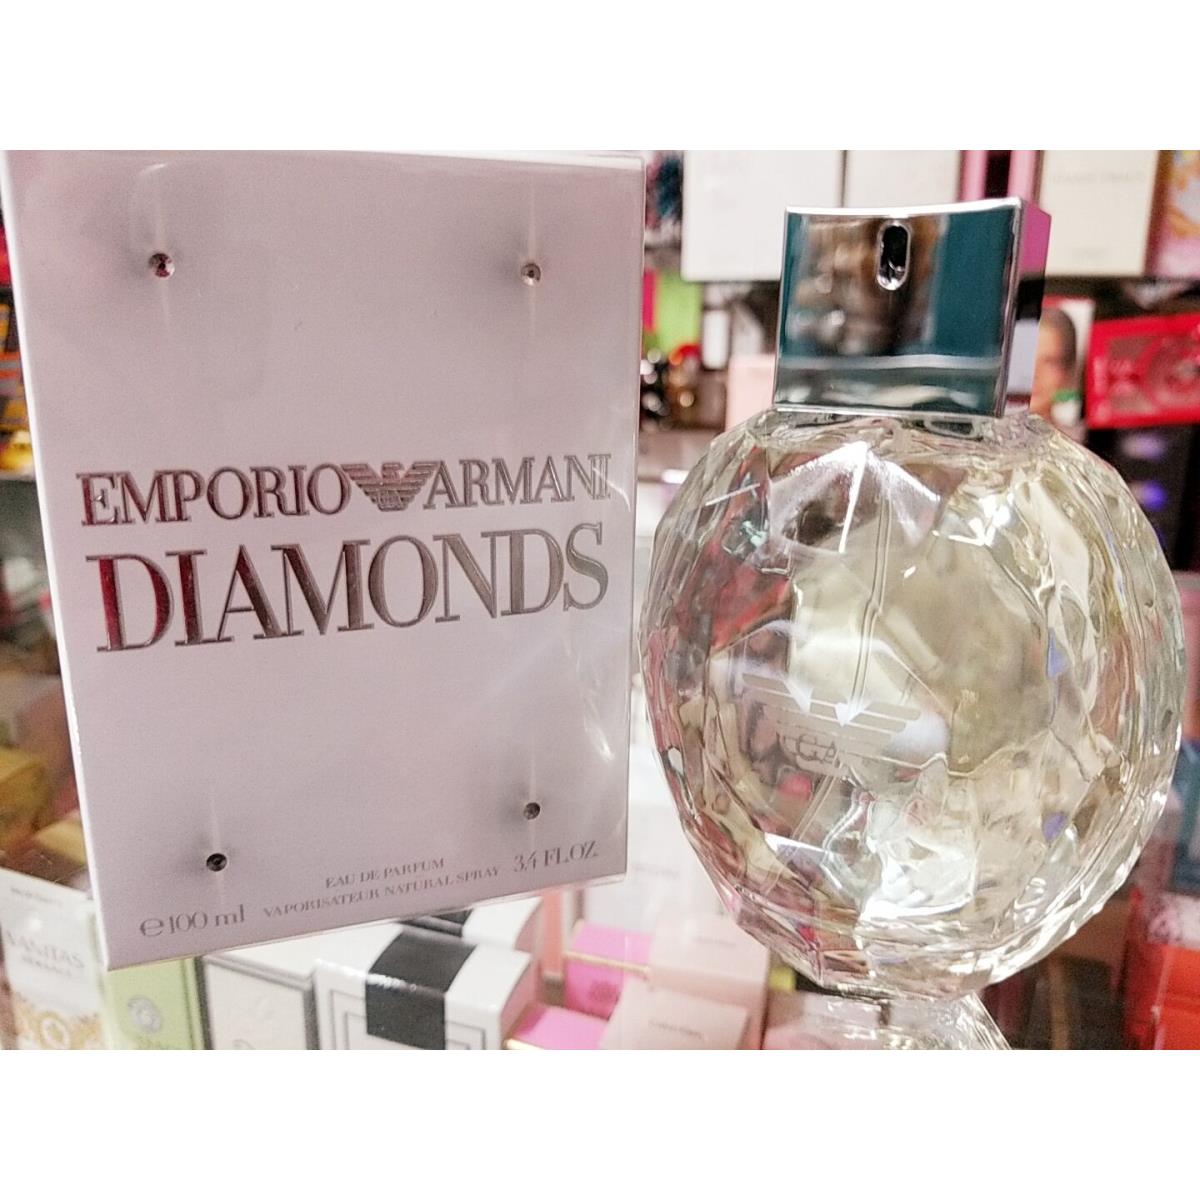 Emporio Armani Diamonds by Giorgio Armani 3.4 oz Edp Perfume For Women